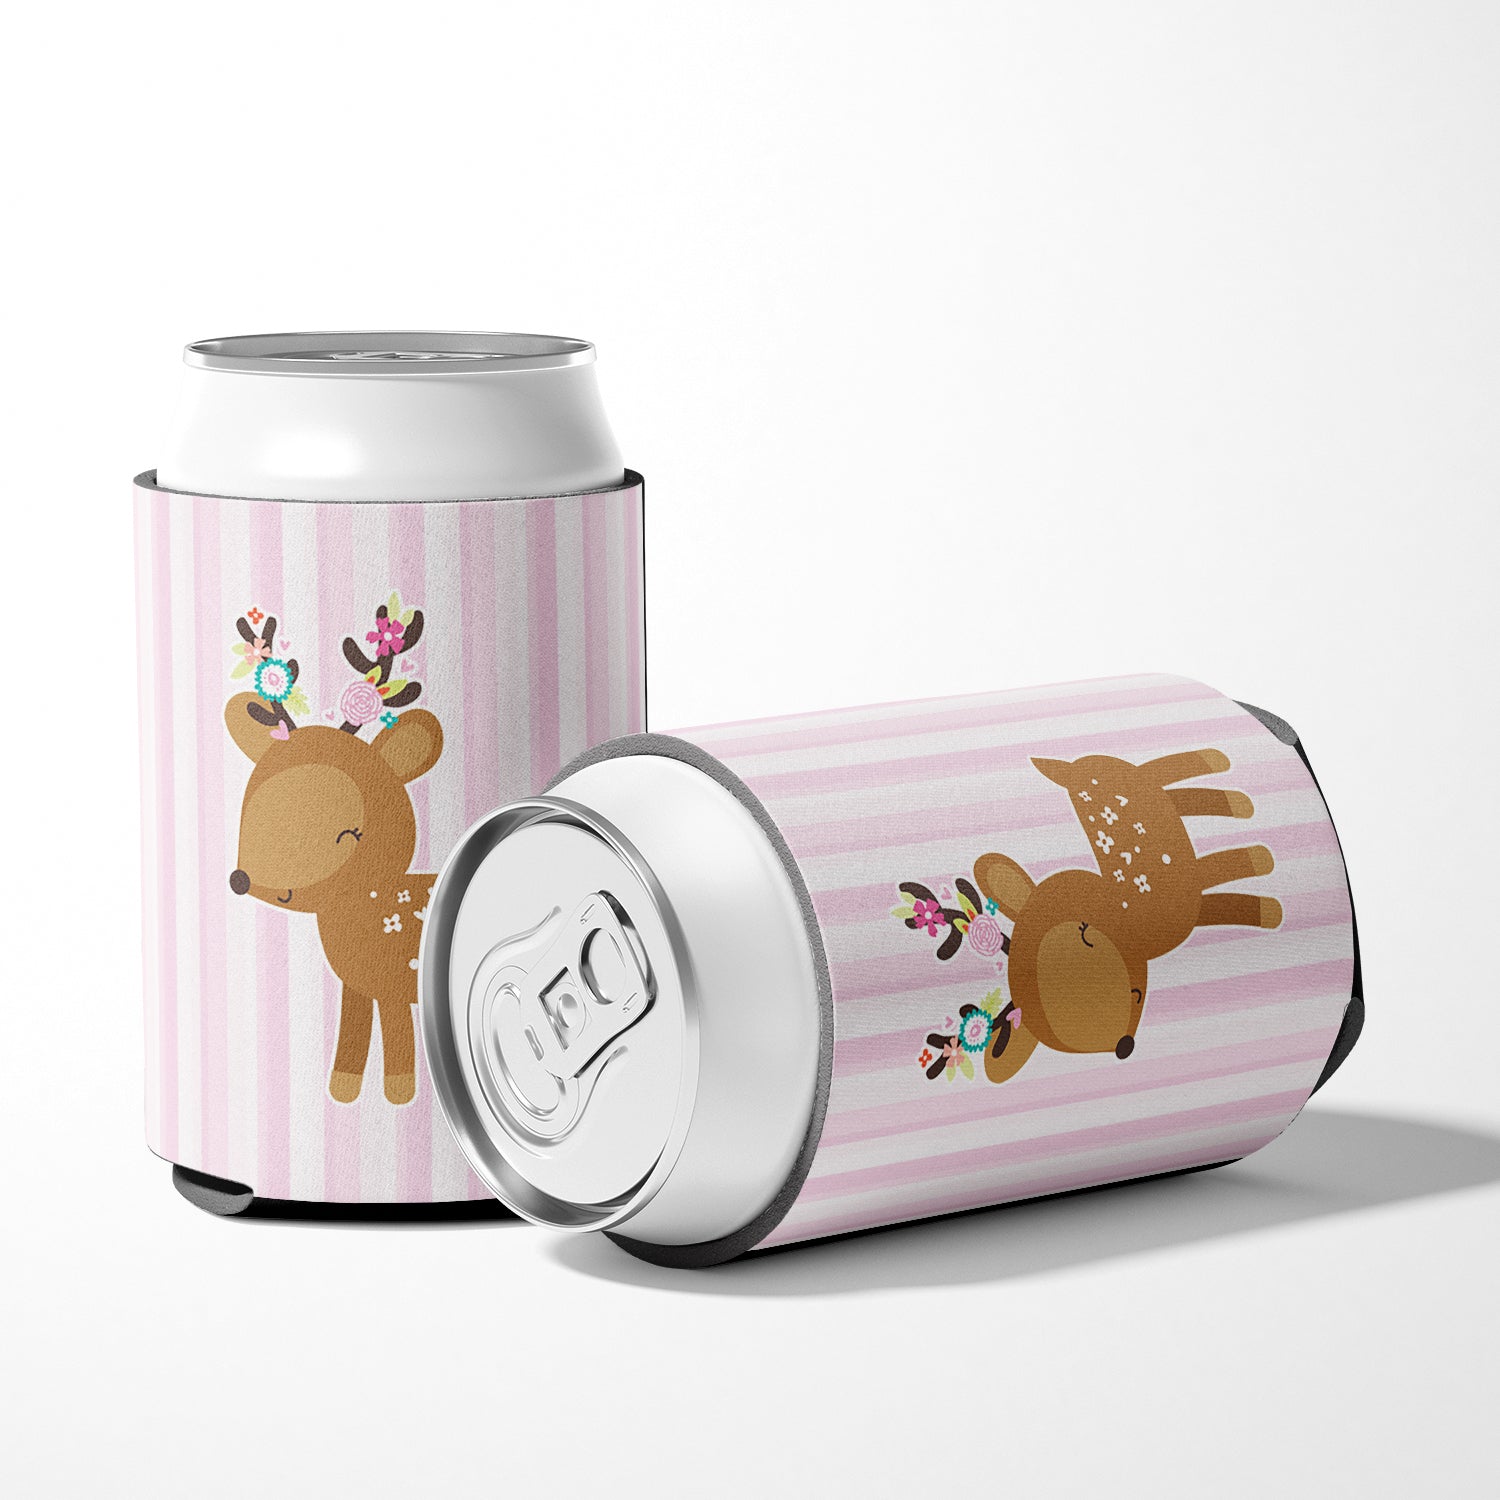 Deer in Pink Stripes Can or Bottle Hugger BB6934CC